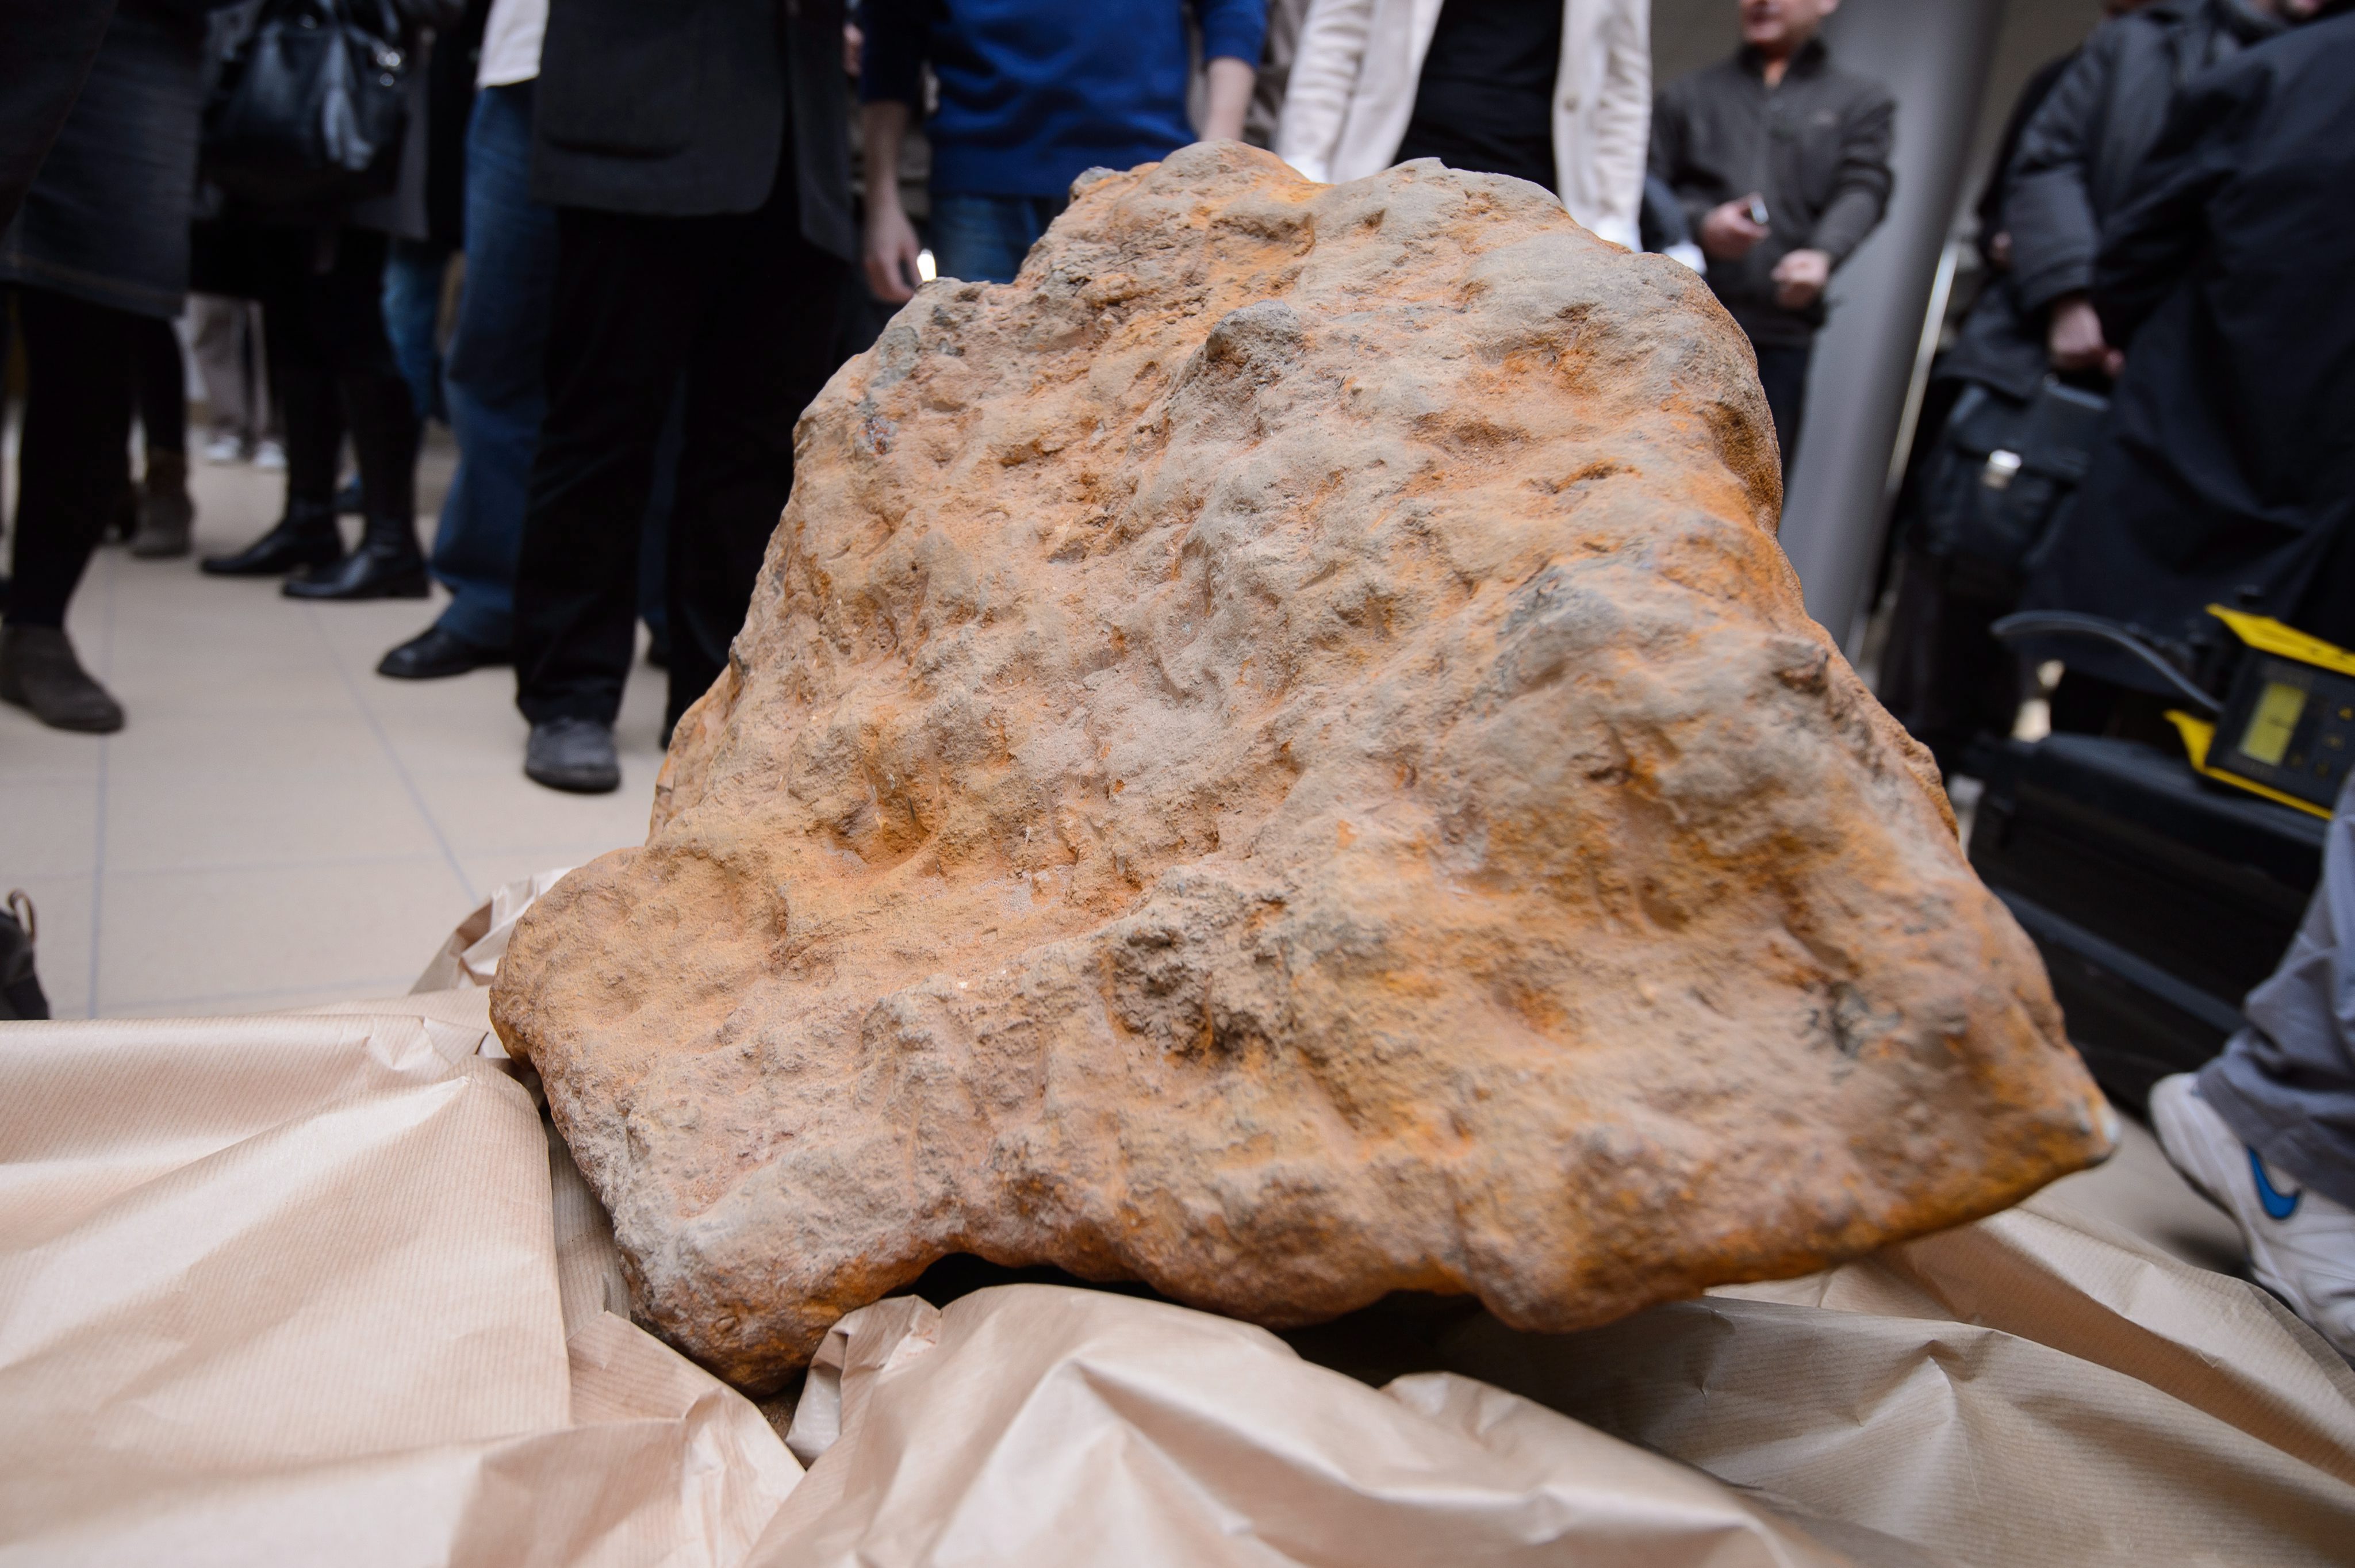 Това е най-богатият в геохимическо отношение марсиански метеорит, твърдят учените (сн. архив)